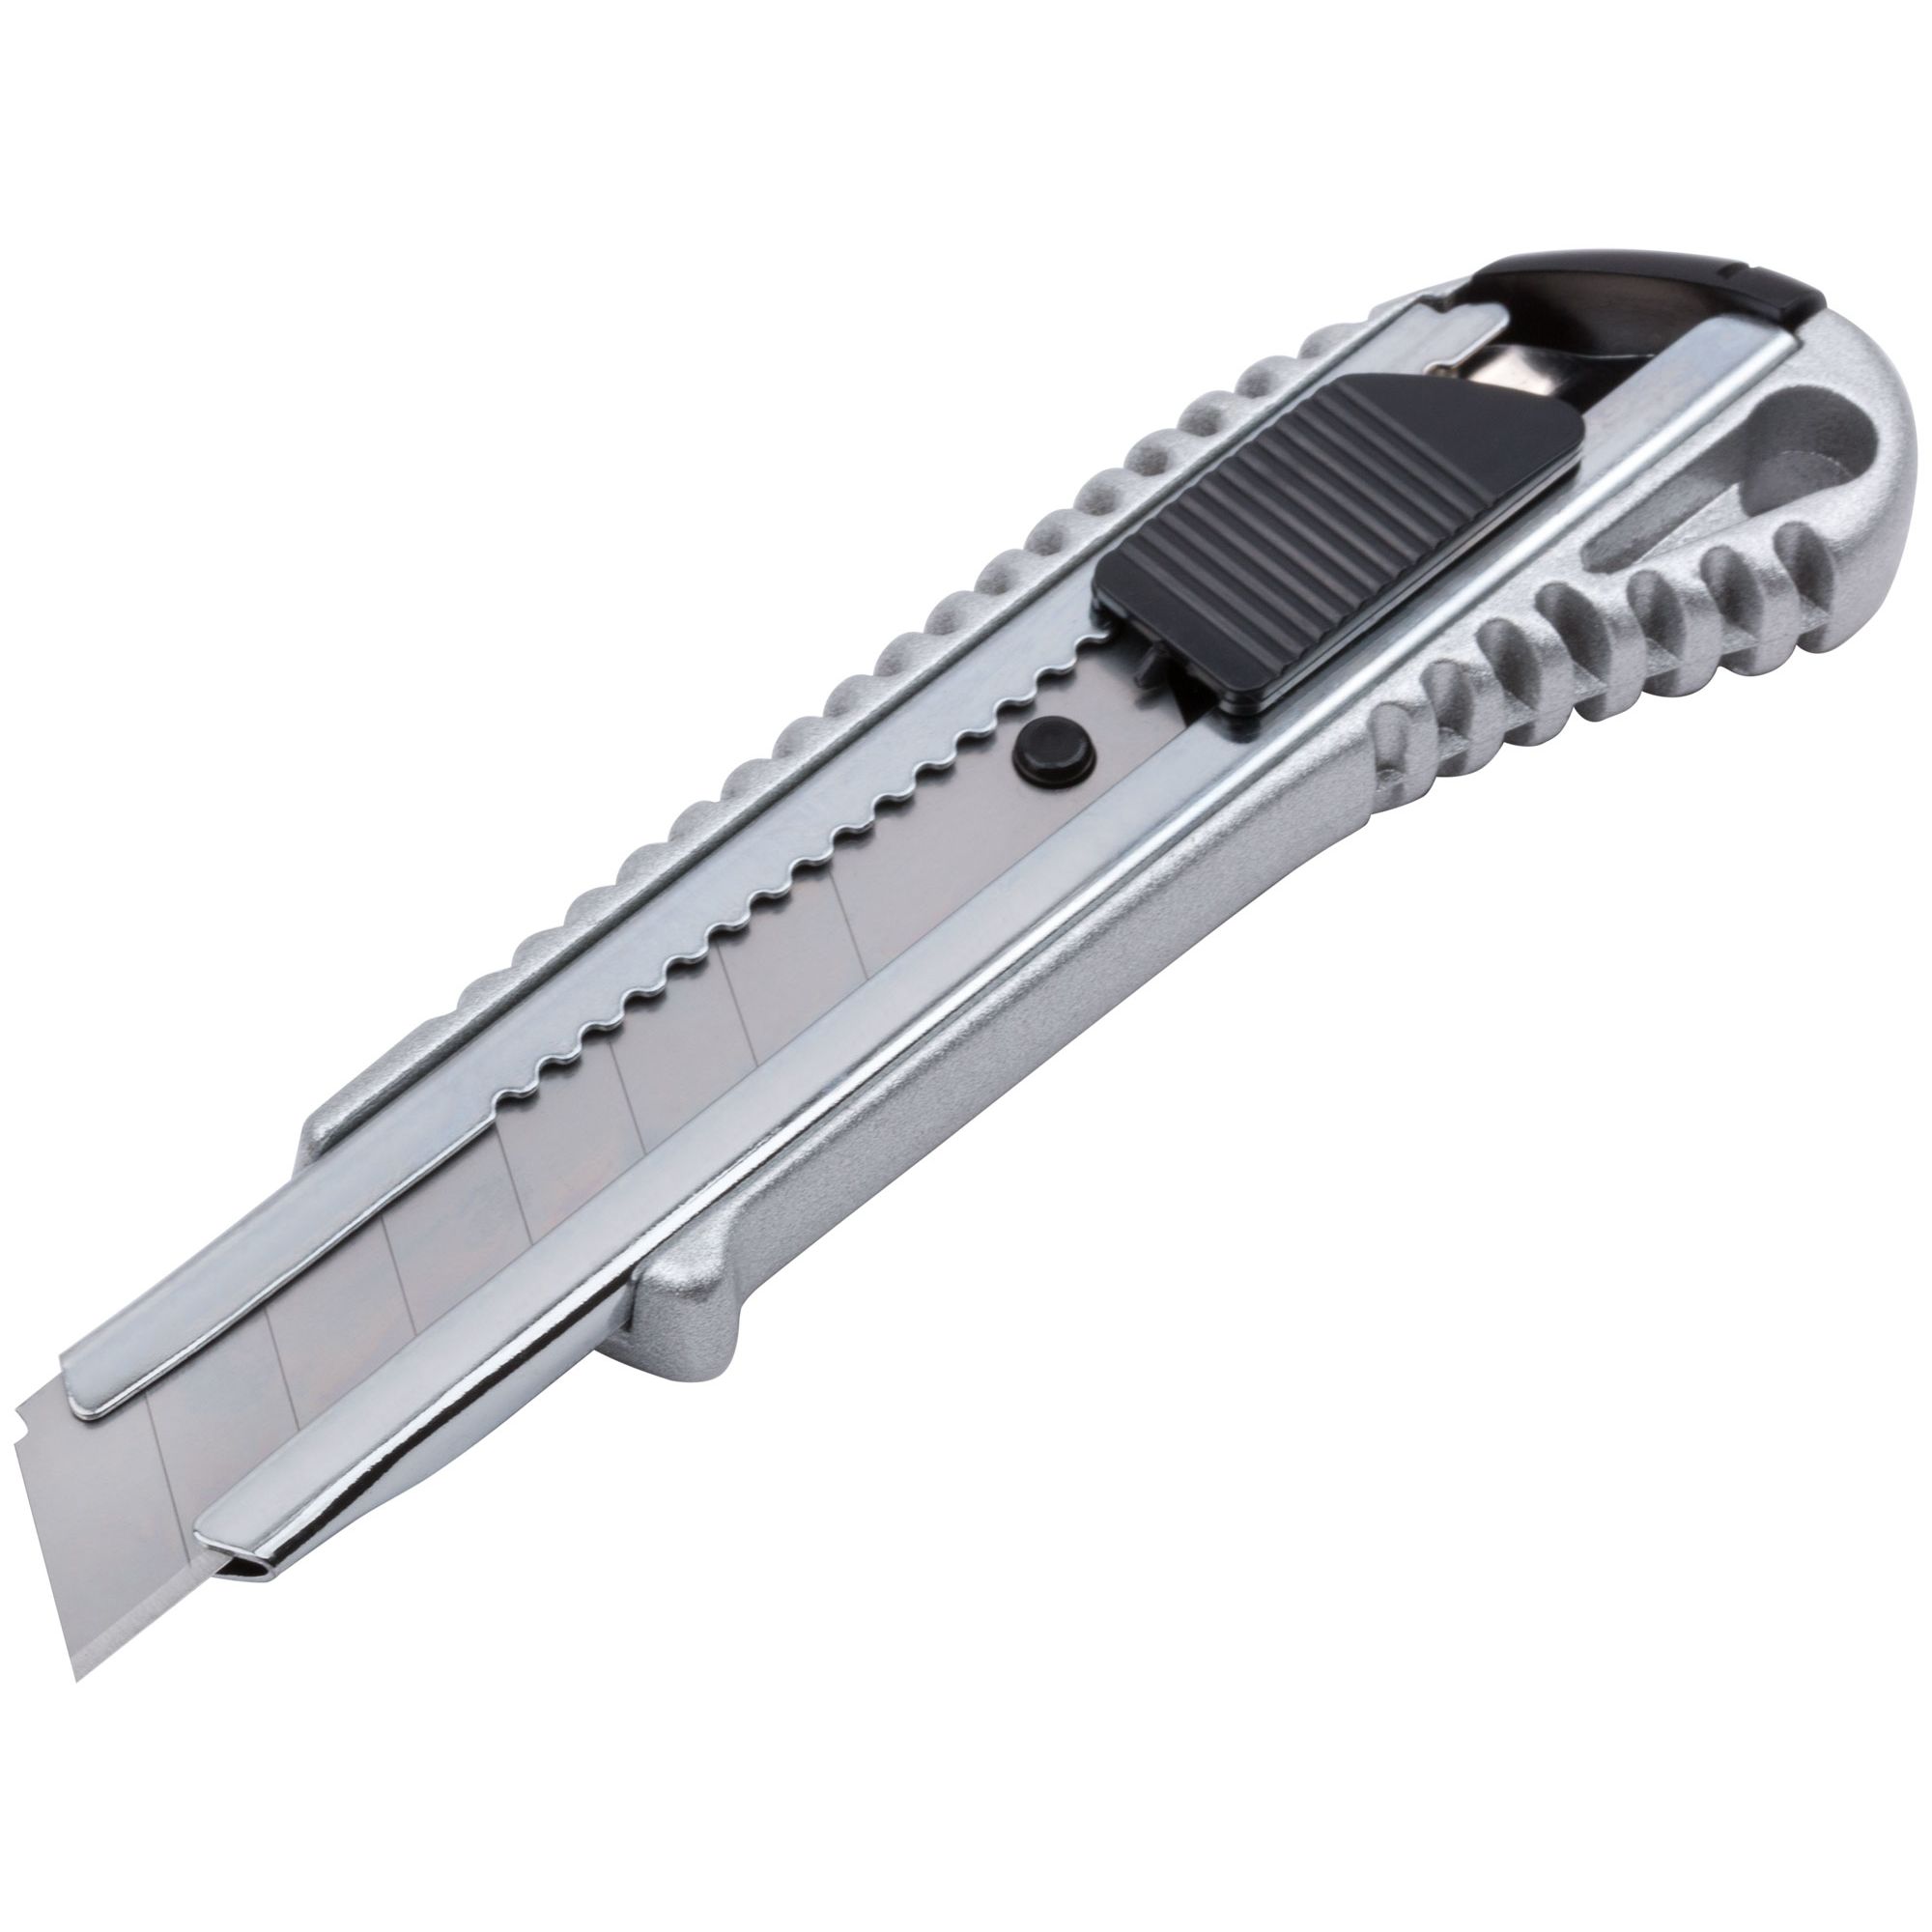 Нож 18 мм металлический. Нож технический Fit 18 мм. Fit it нож технический 18 мм усиленный, металлический корпус 10250. Нож выдвижн 18мм (металл) Topex. Нож технический 18 мм усиленный металлич.корпус.